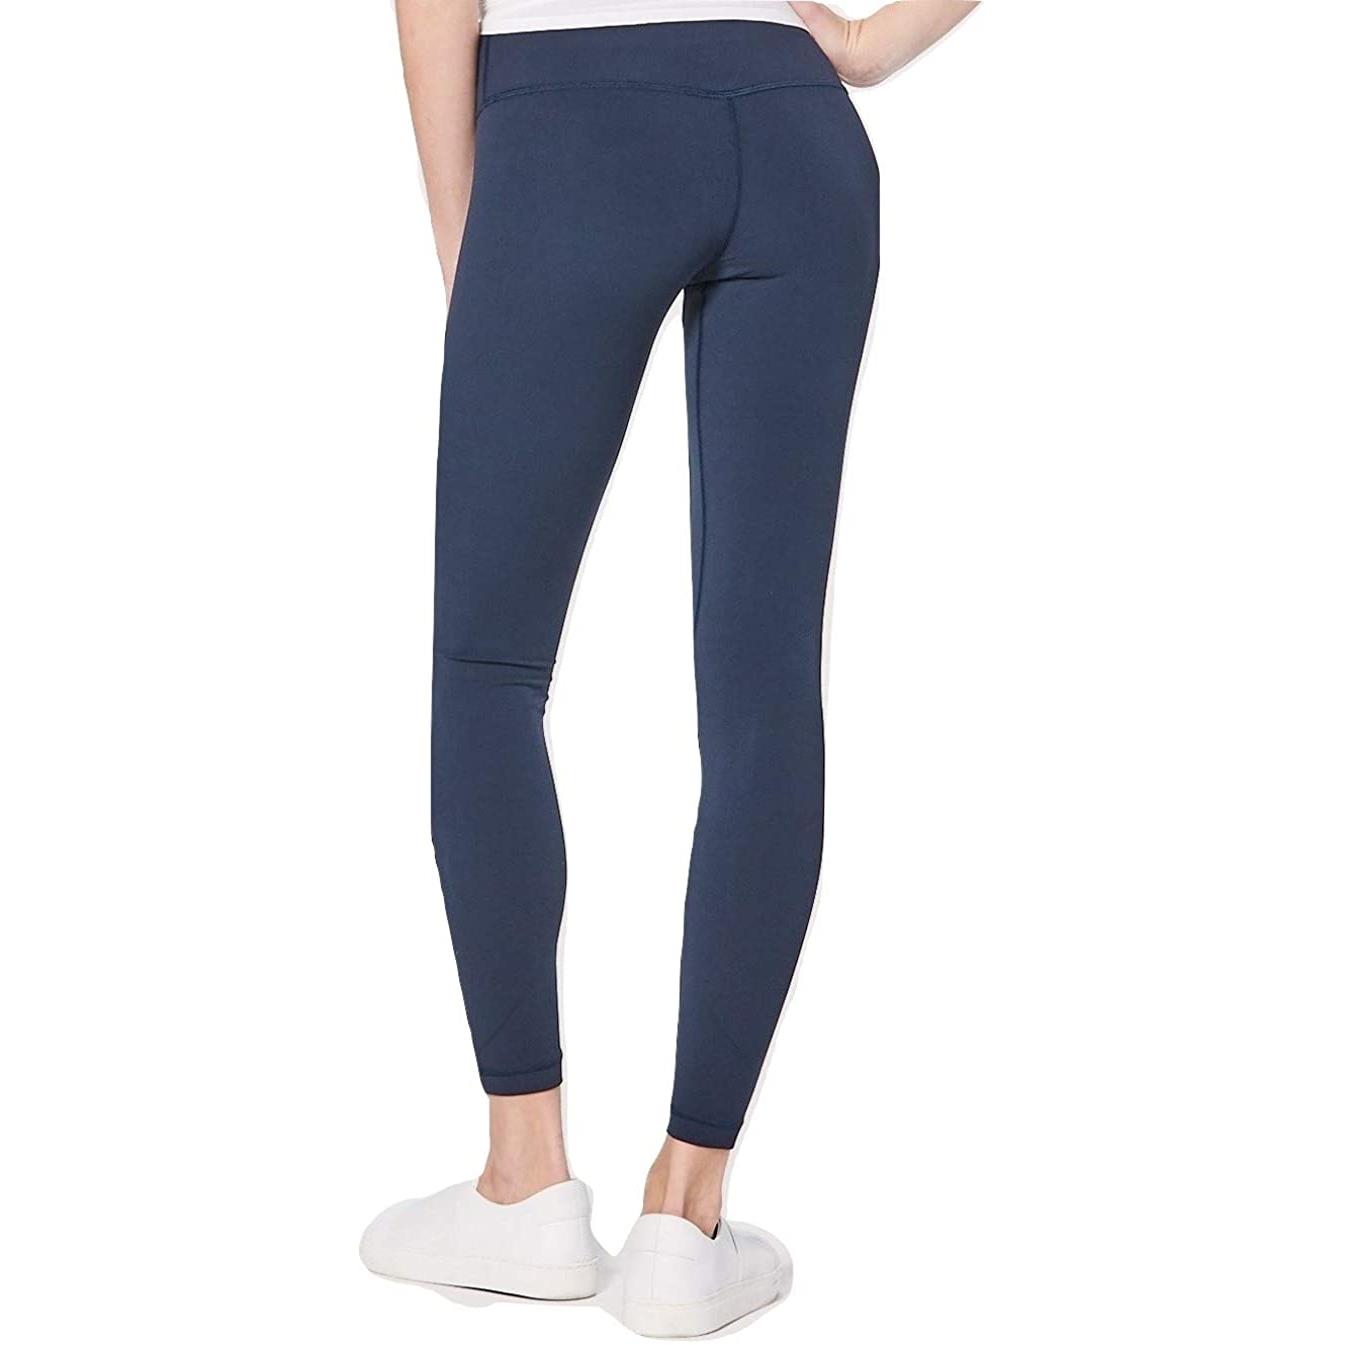 Lululemon Align Pant Full Length Yoga Pants Navy